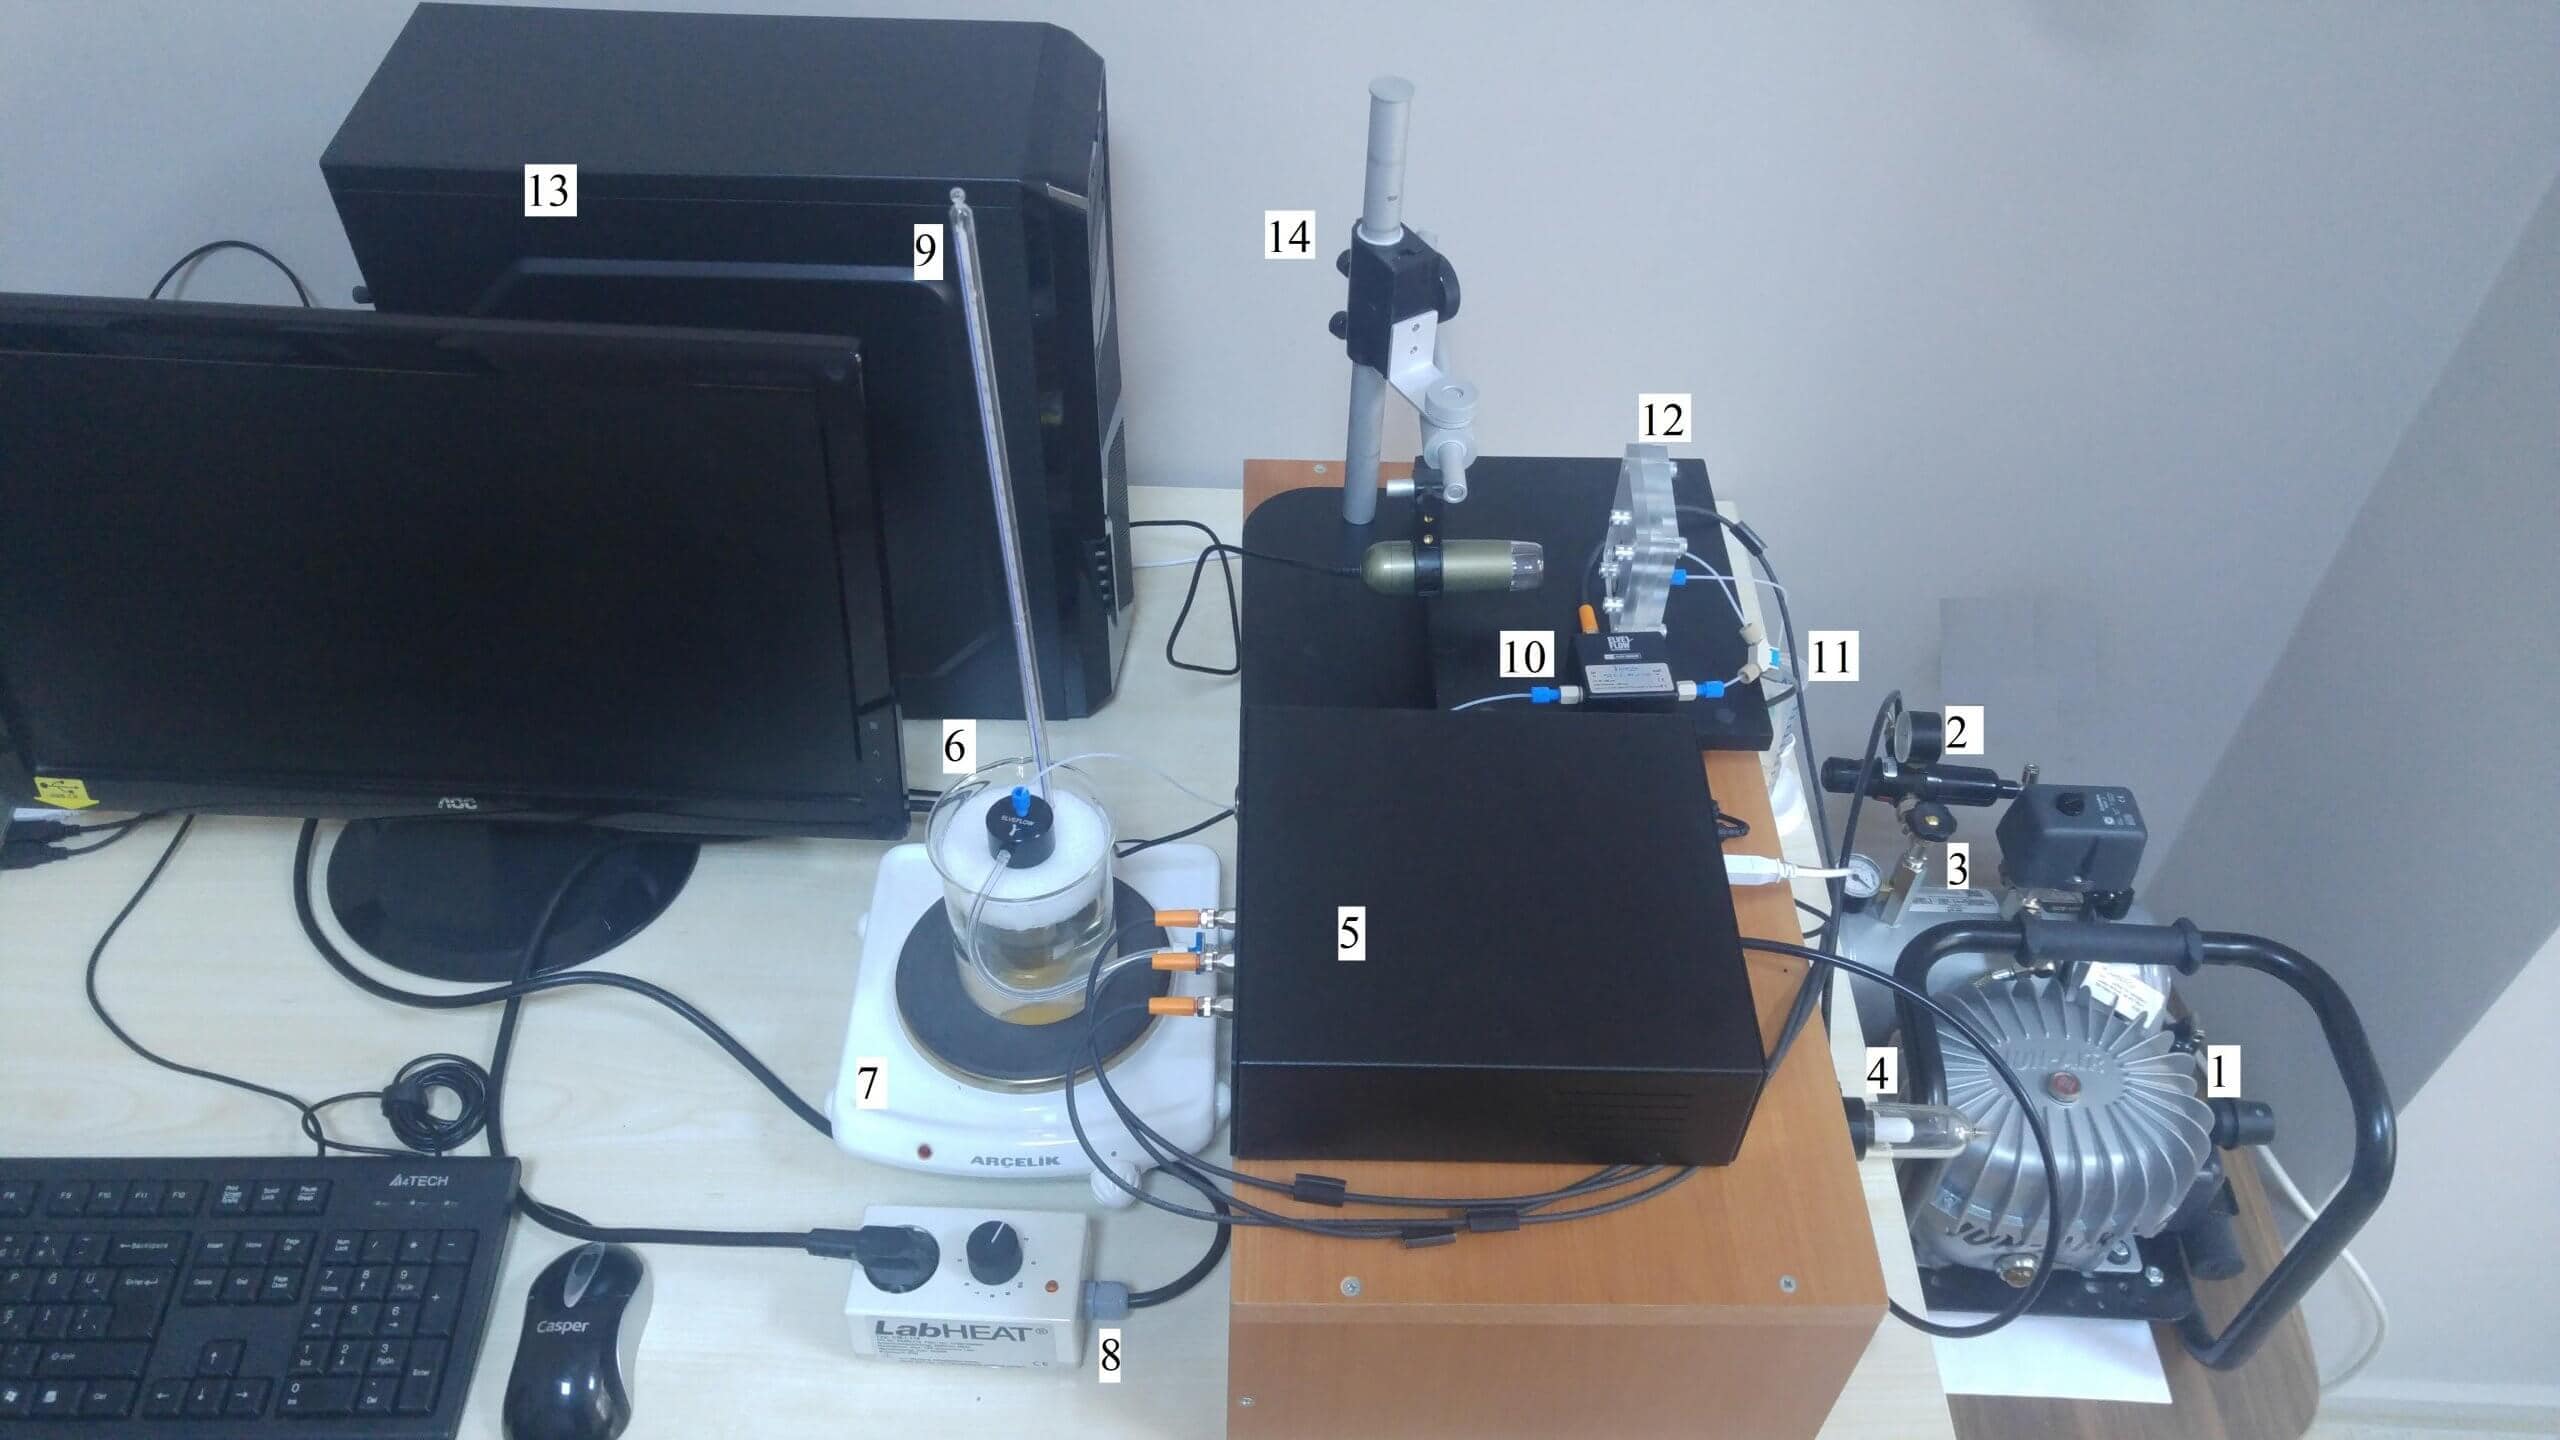 glaucoma drainage devices setup image scaled